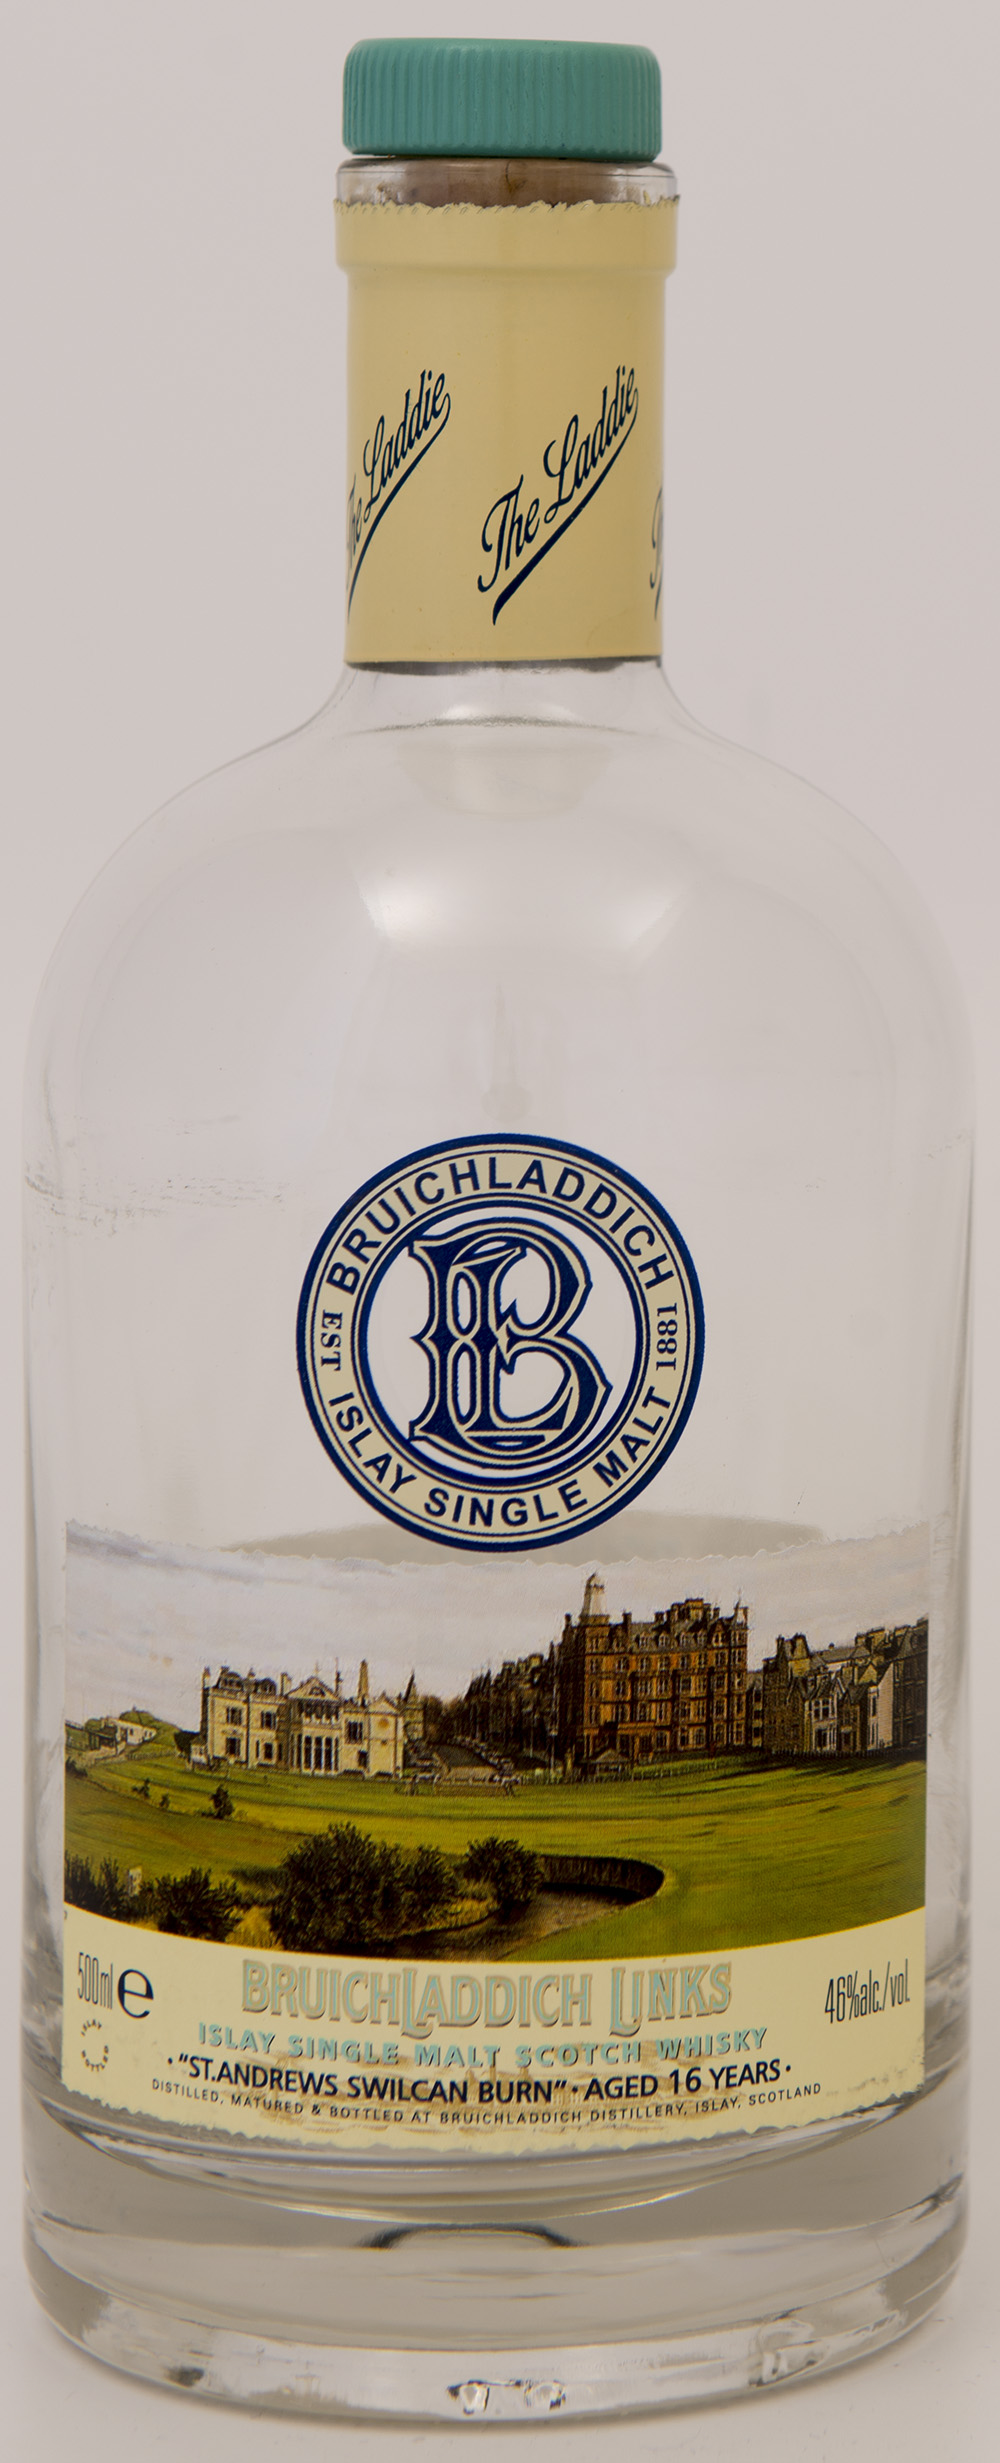 Billede: DSC_3295 - St Andrews Swilcan Burn - bottle front.jpg